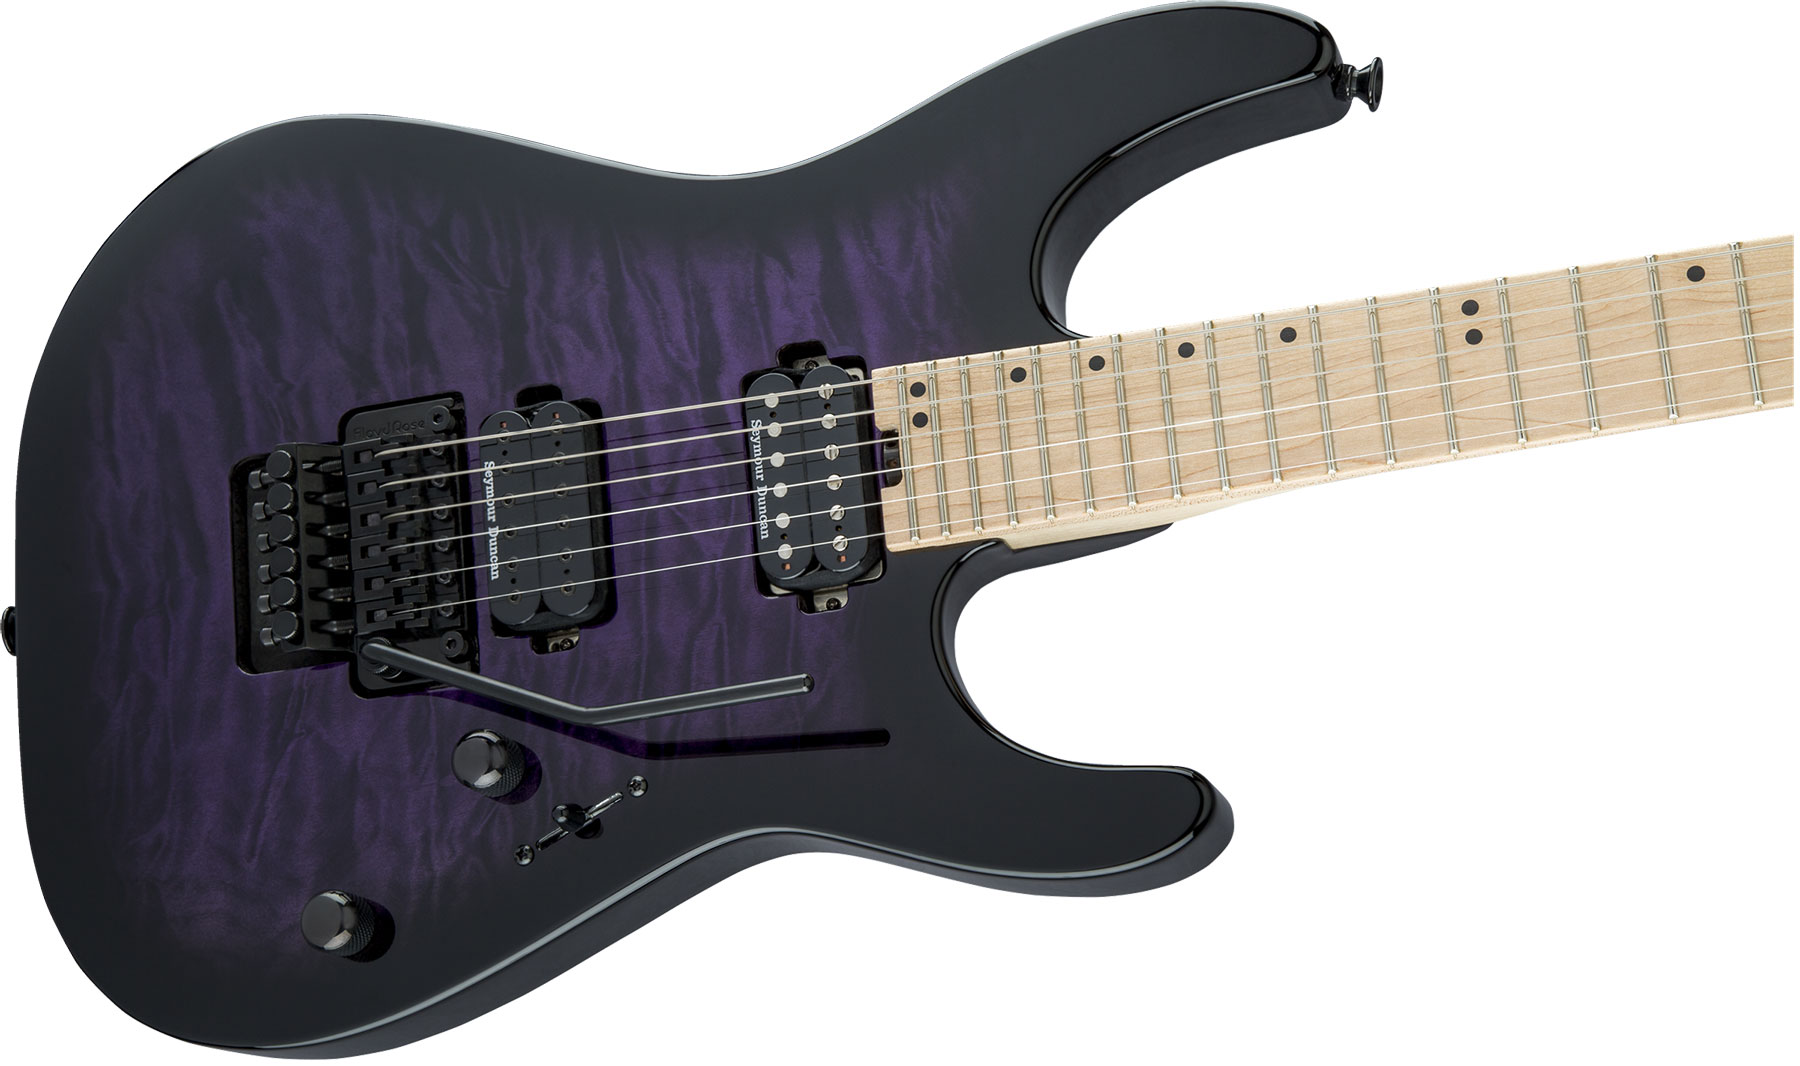 Charvel Pro-mod Dk24 Hh Fr M Qm Trem Mn - Transparent Purple Burst - Guitarra eléctrica con forma de str. - Variation 2